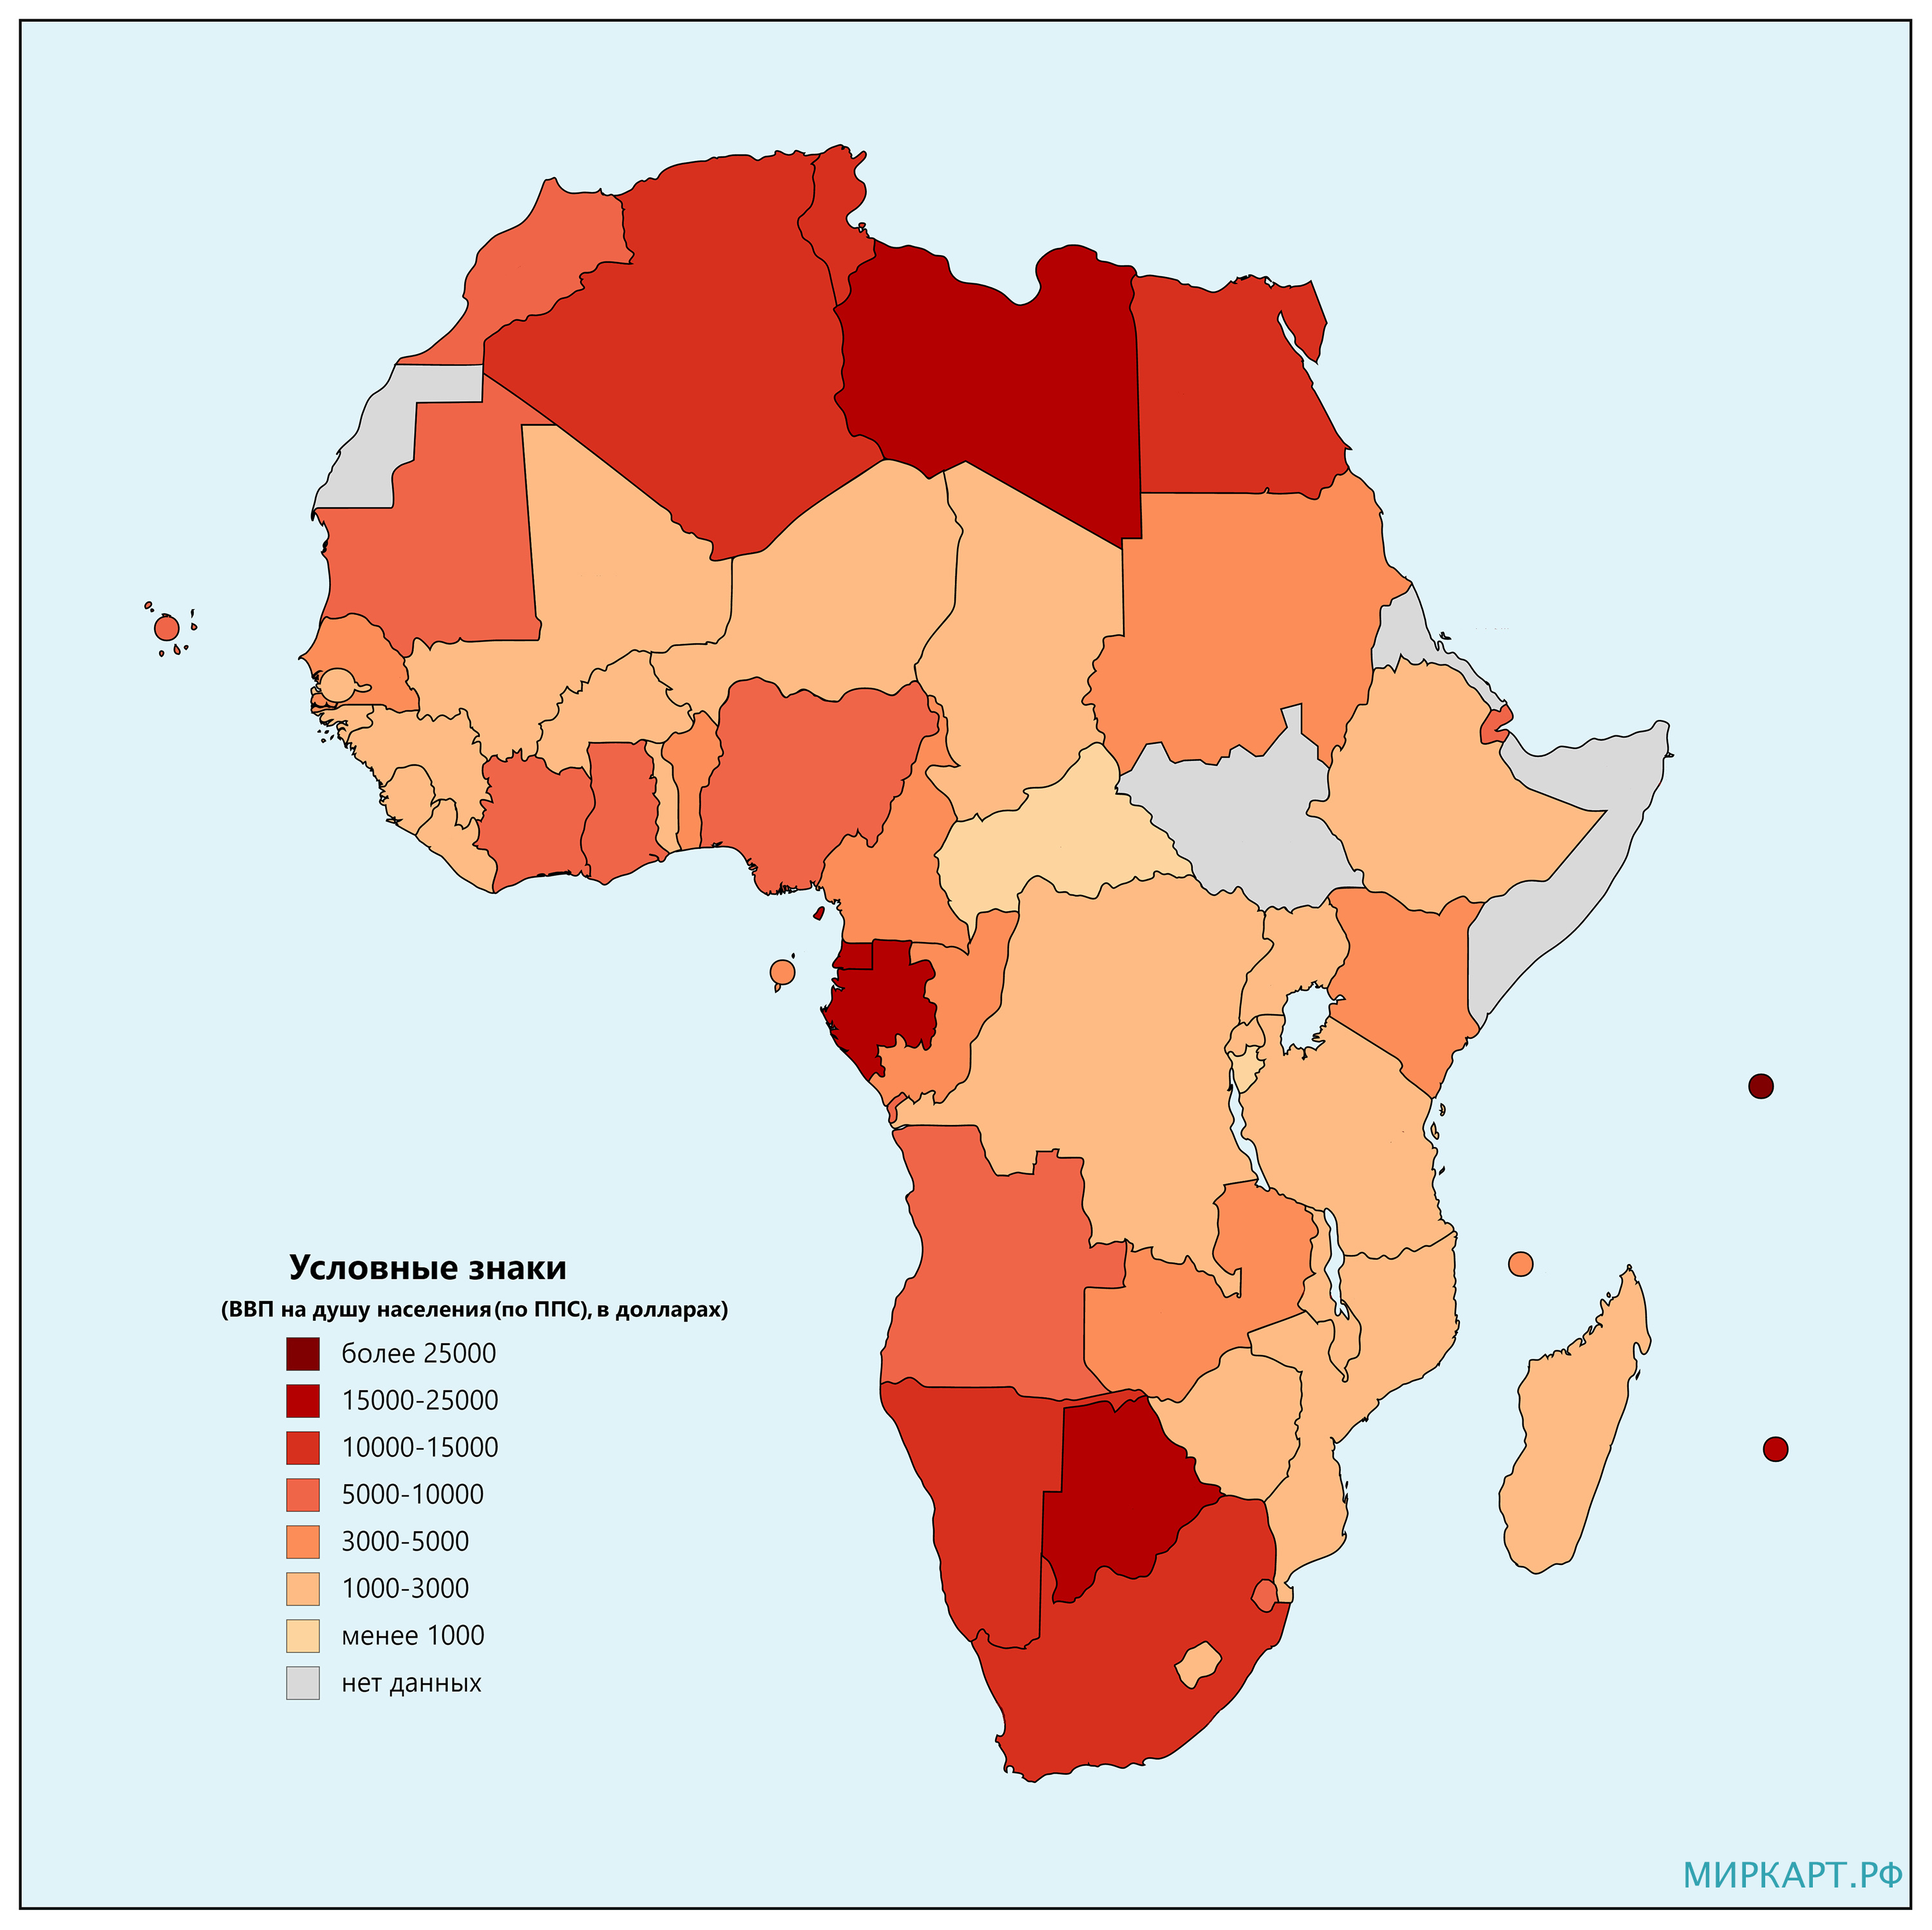 ВВП на душу населения (по ППС) в странах Африки в 2019 году